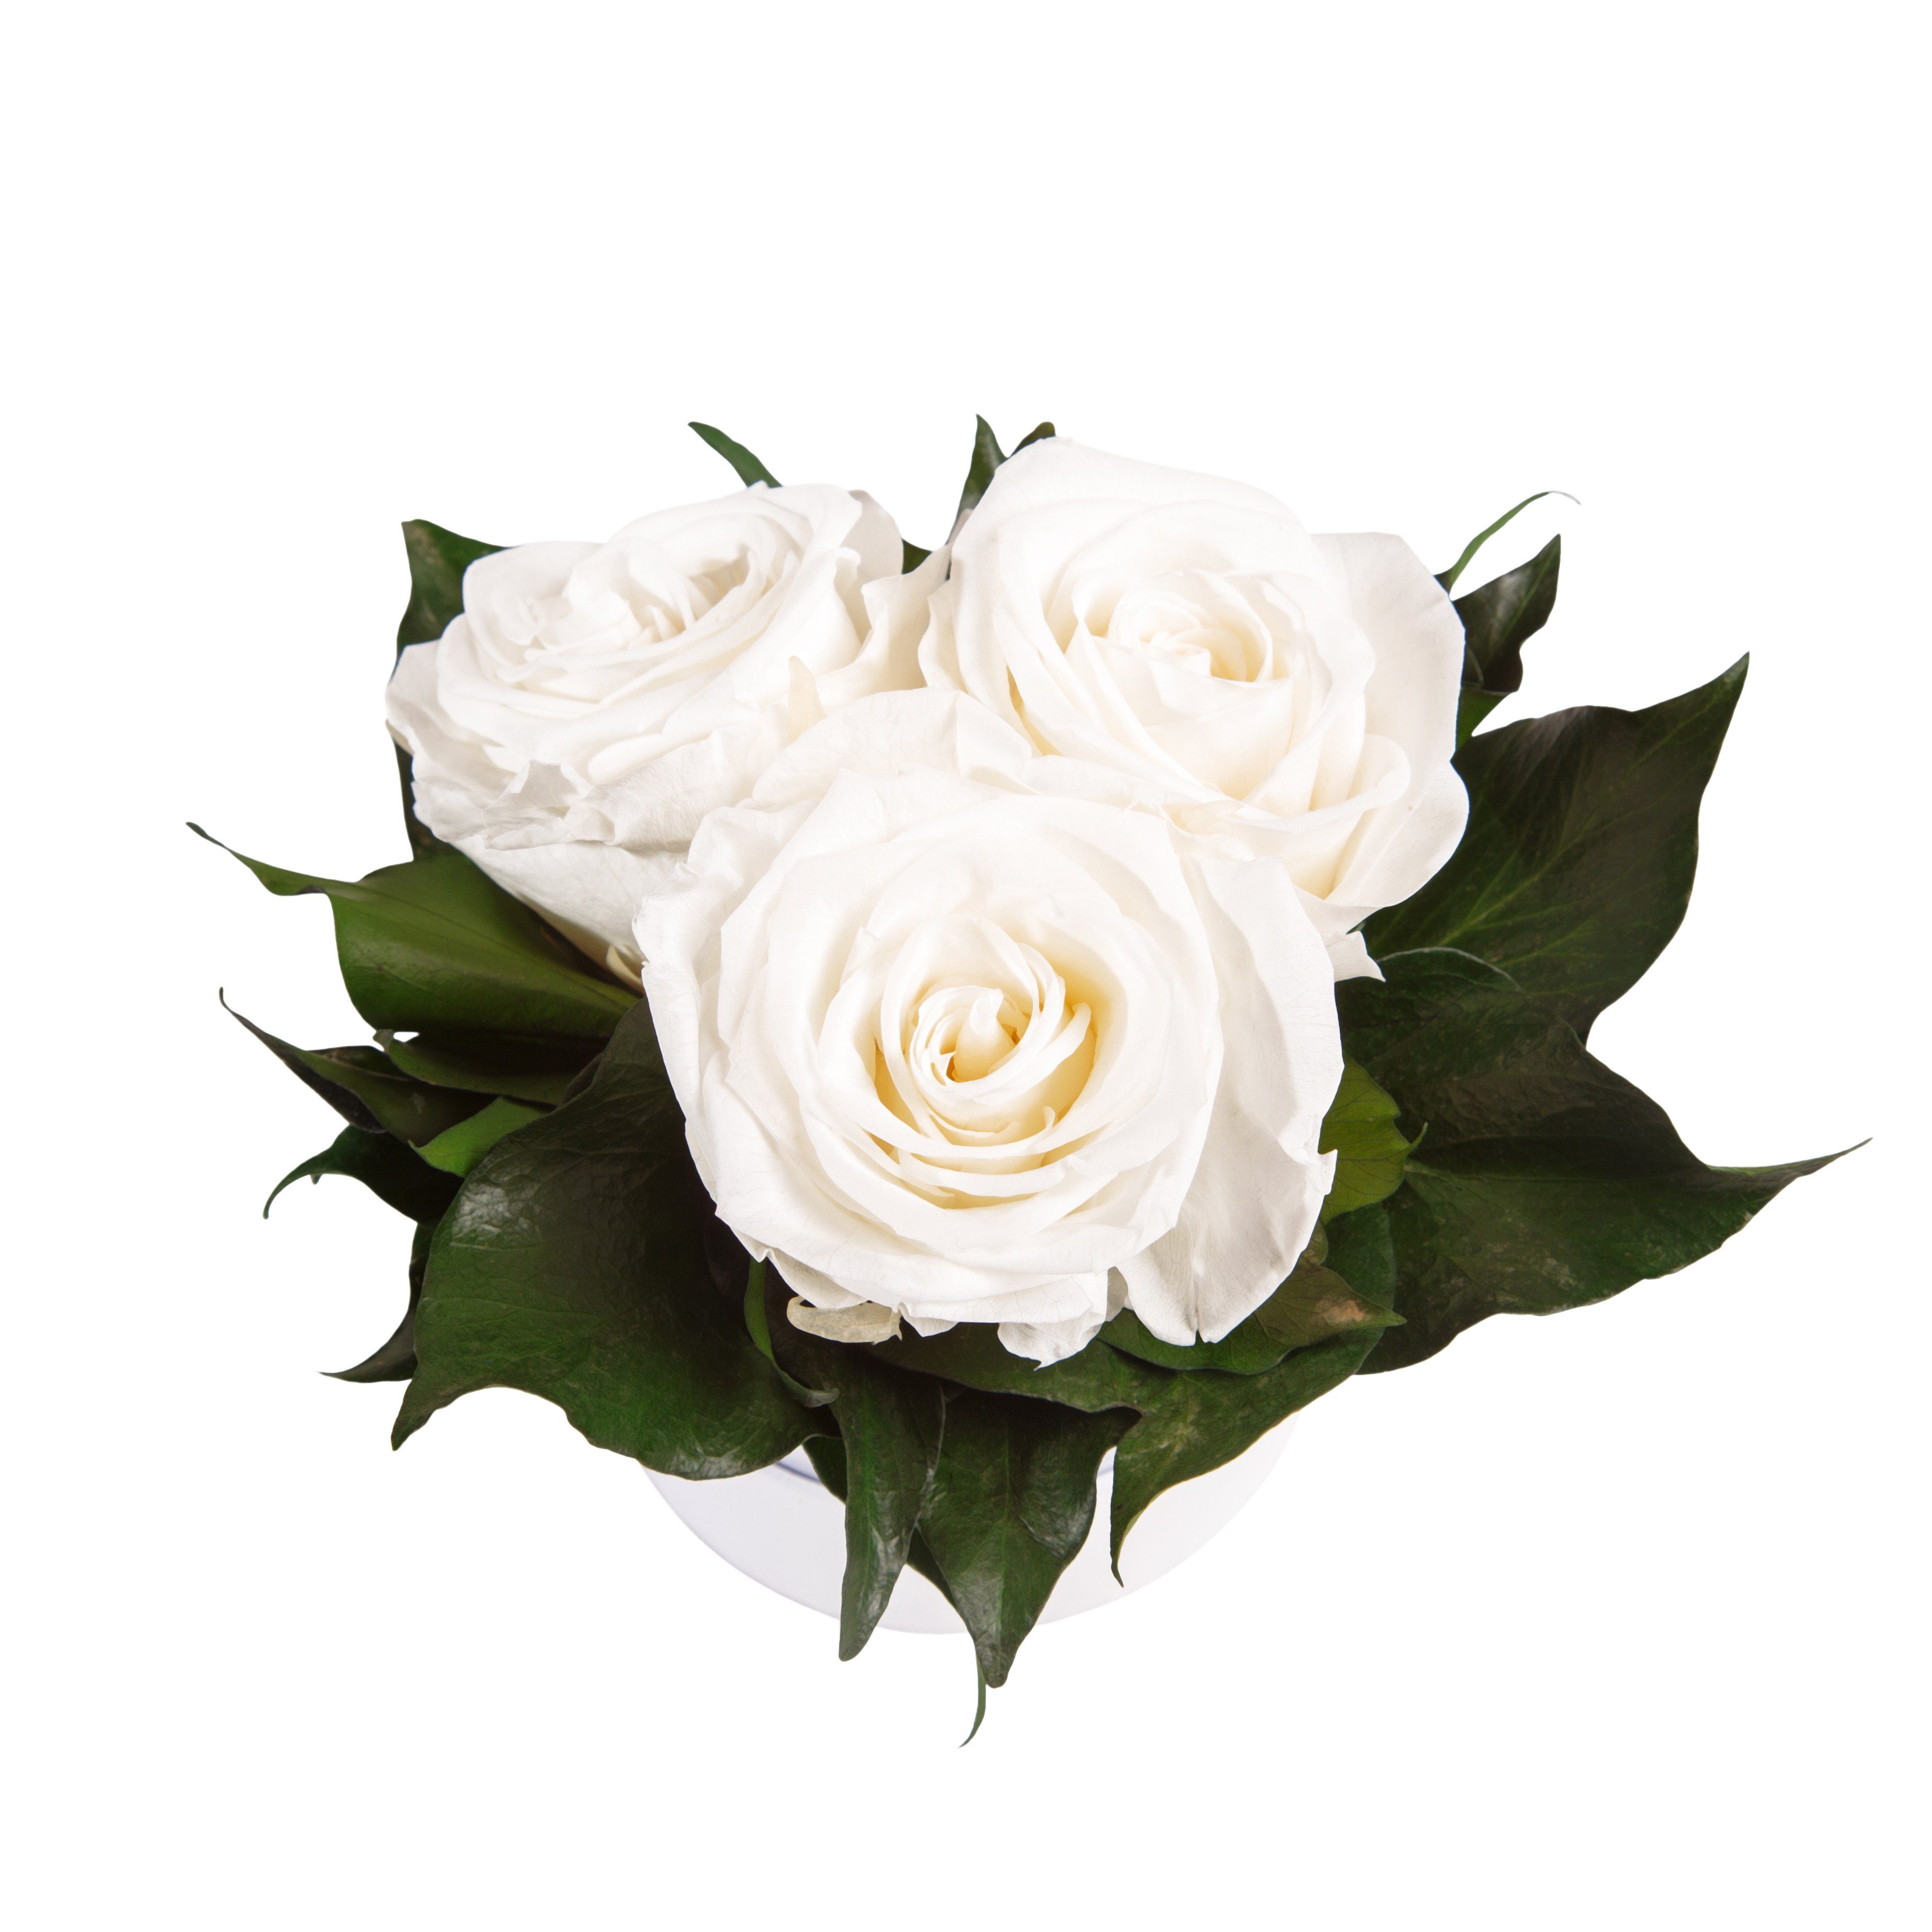 Kunstblume Infinity für Geschenk Heidelberg, ROSEMARIE Rosenbox 3 cm, echte rund Rosen weiß Sie Rosen Höhe SCHULZ Rose, 10 konserviert